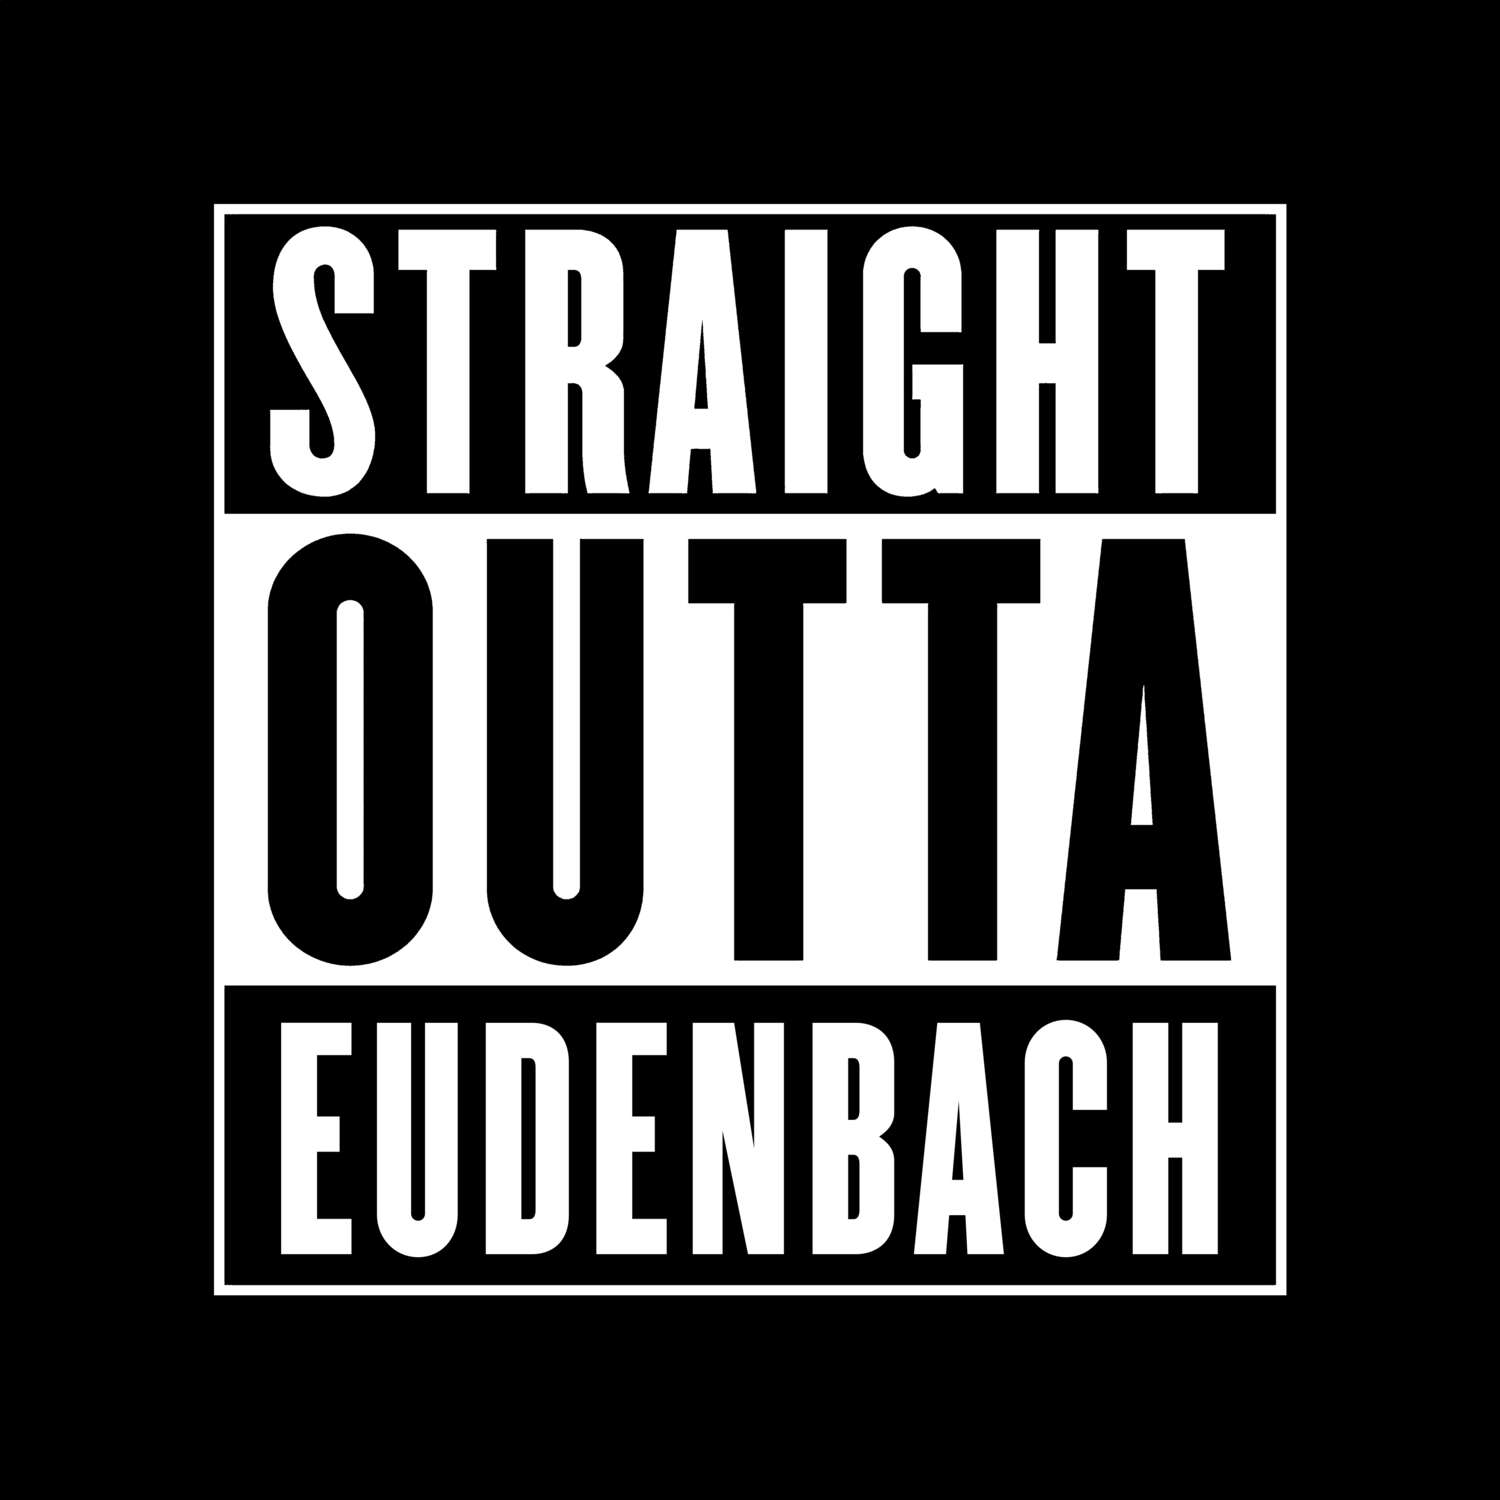 Eudenbach T-Shirt »Straight Outta«